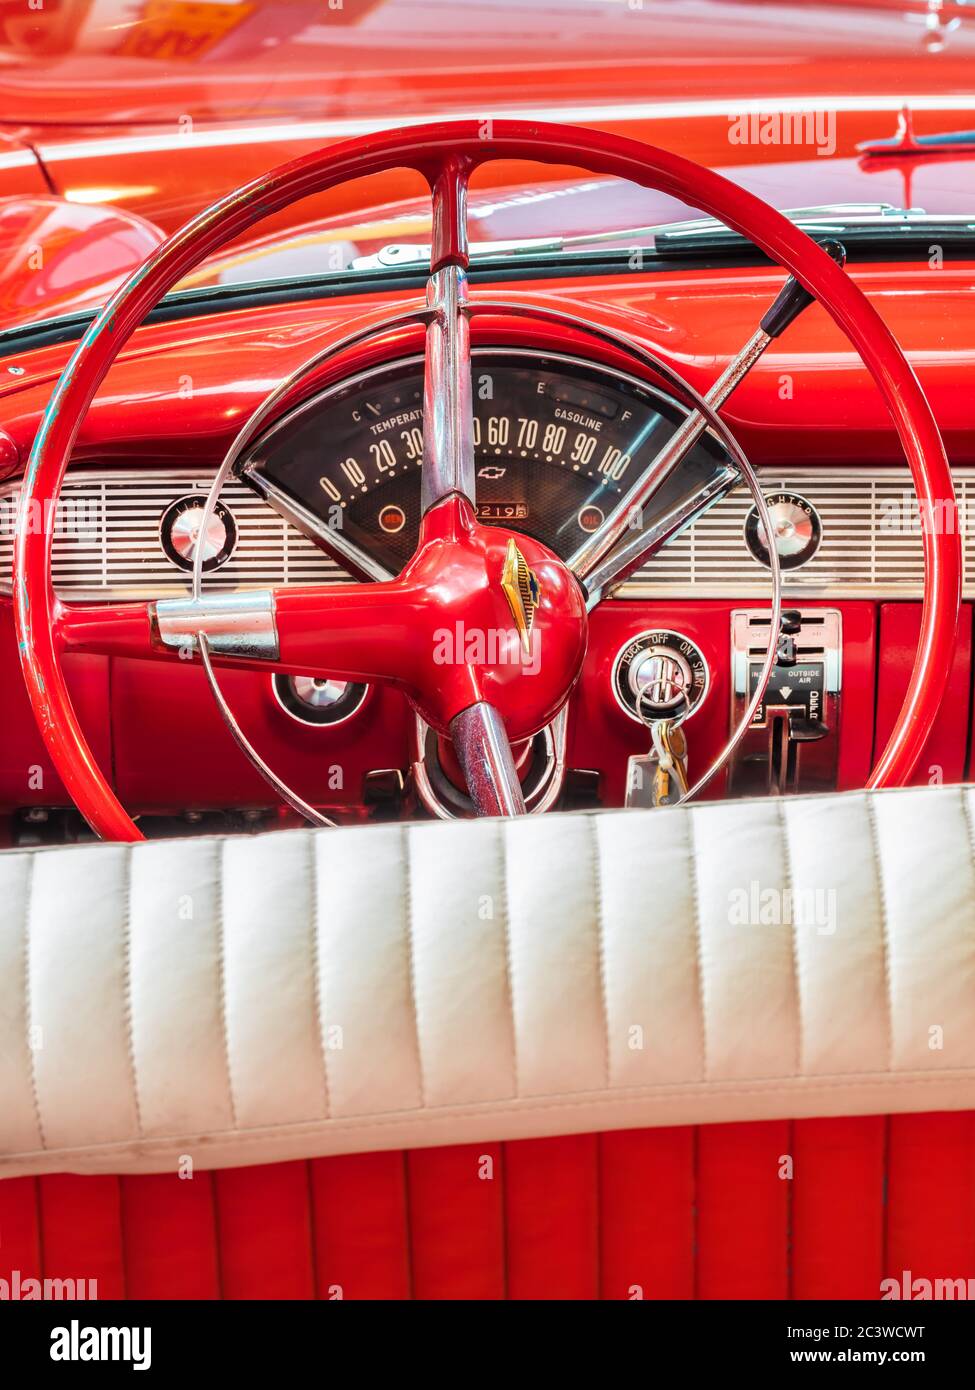 Drempt, pays-Bas - 11 juin 2020 : intérieur d'une voiture classique Red 1956 Chevrolet Bel Air convertible dans le village hollandais de Drempt, pays-Bas Banque D'Images